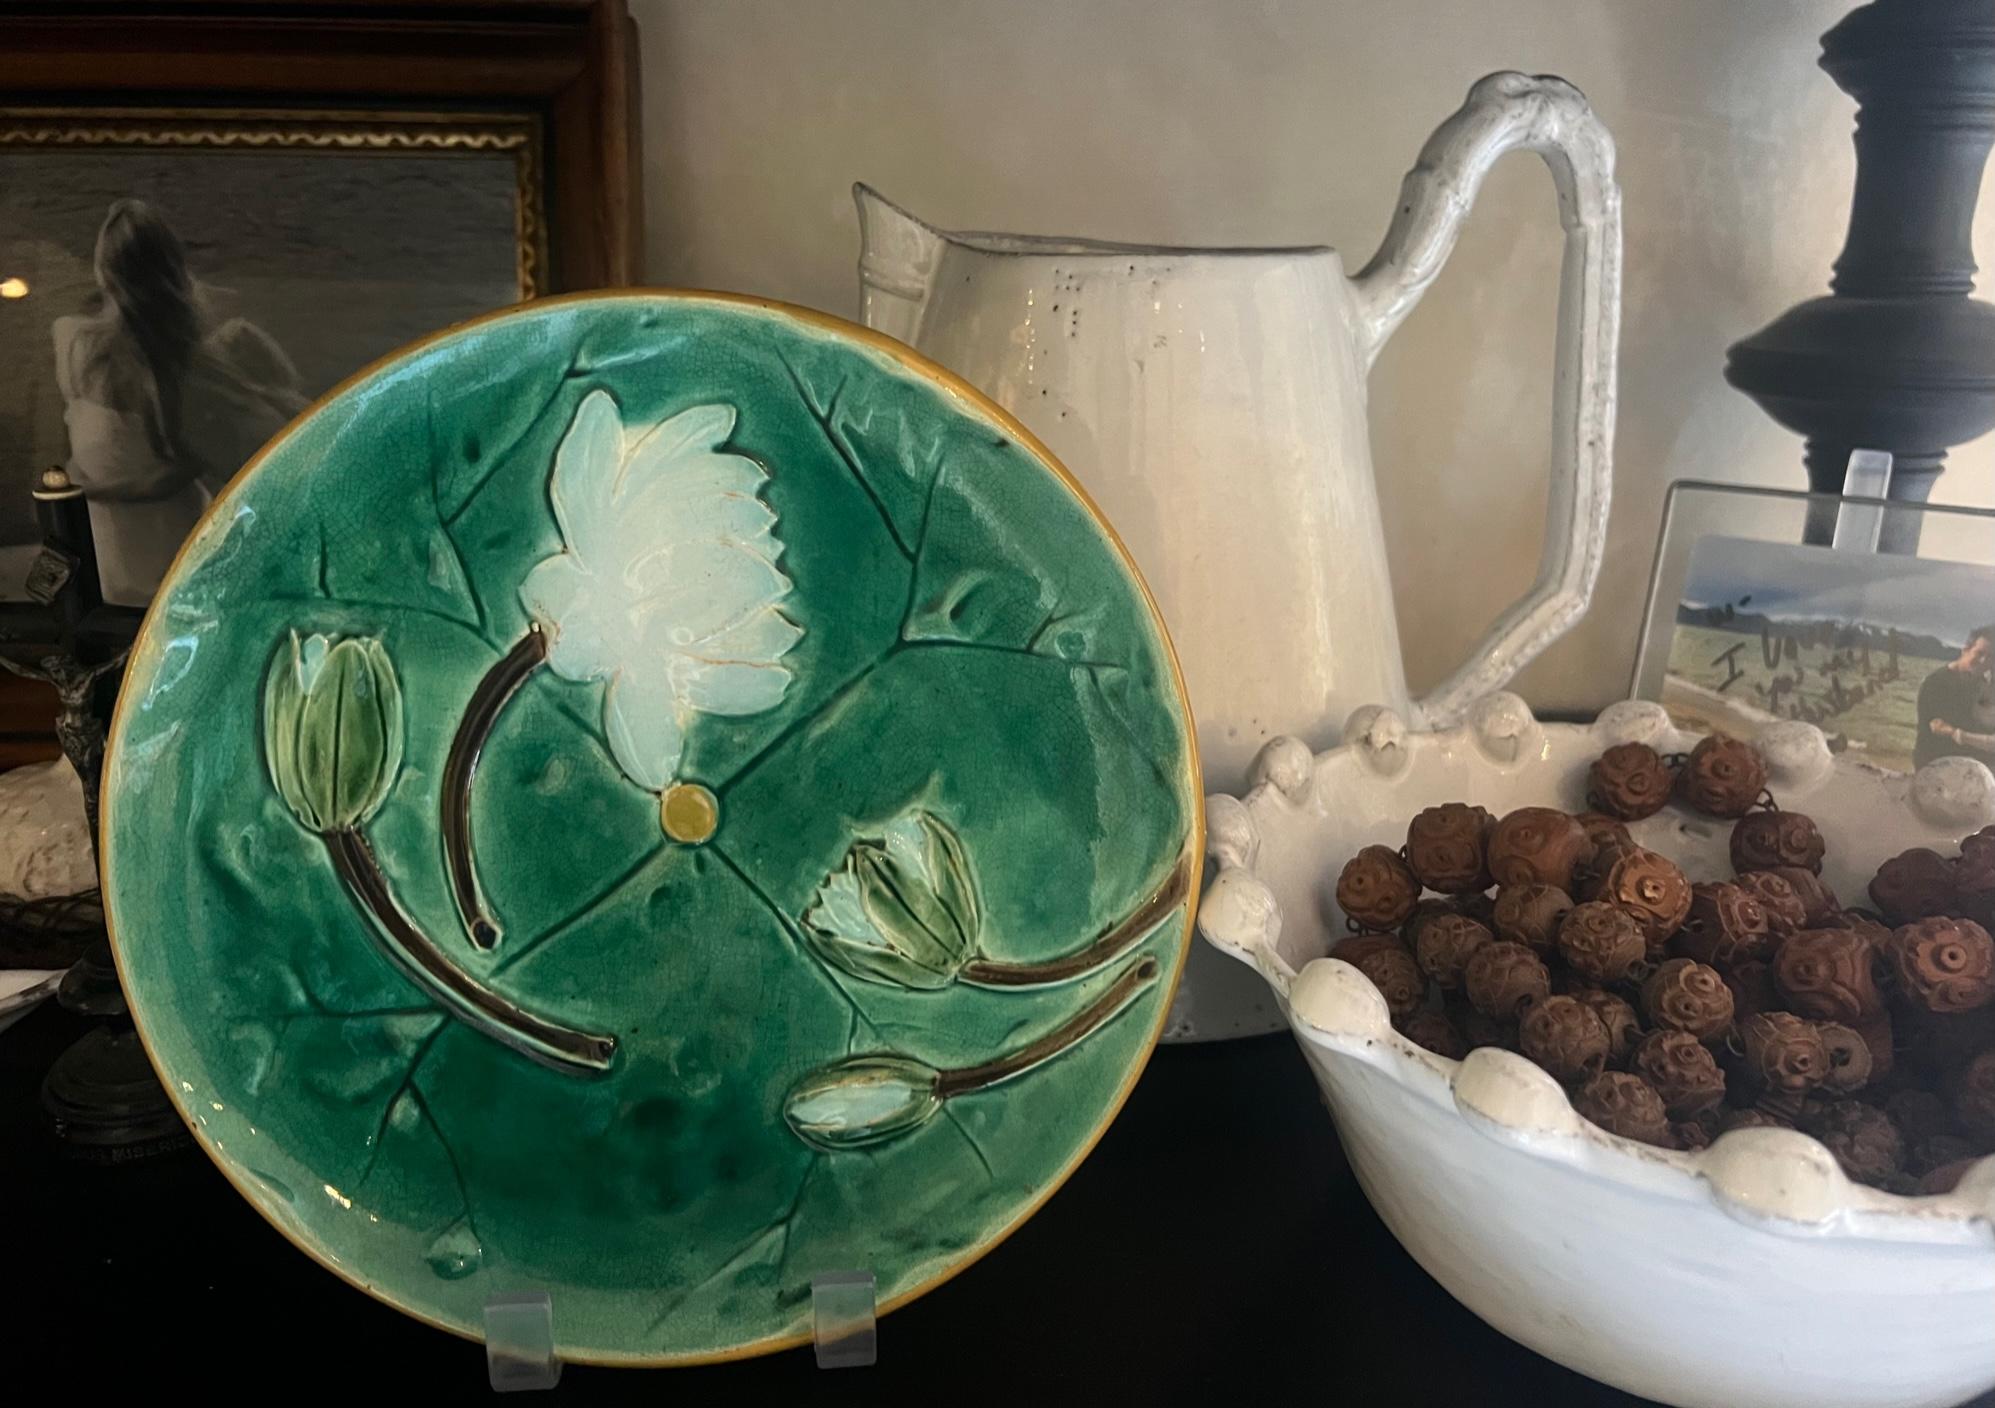 Assiette à nénuphars ancienne en majolique, réalisée par Joseph Holdcraft vers 1885 en Angleterre.  Une assiette d'un vert éclatant avec des fleurs de nénuphar et un bord jaune.  La face inférieure porte le poinçon JH dans un cercle, indiquant